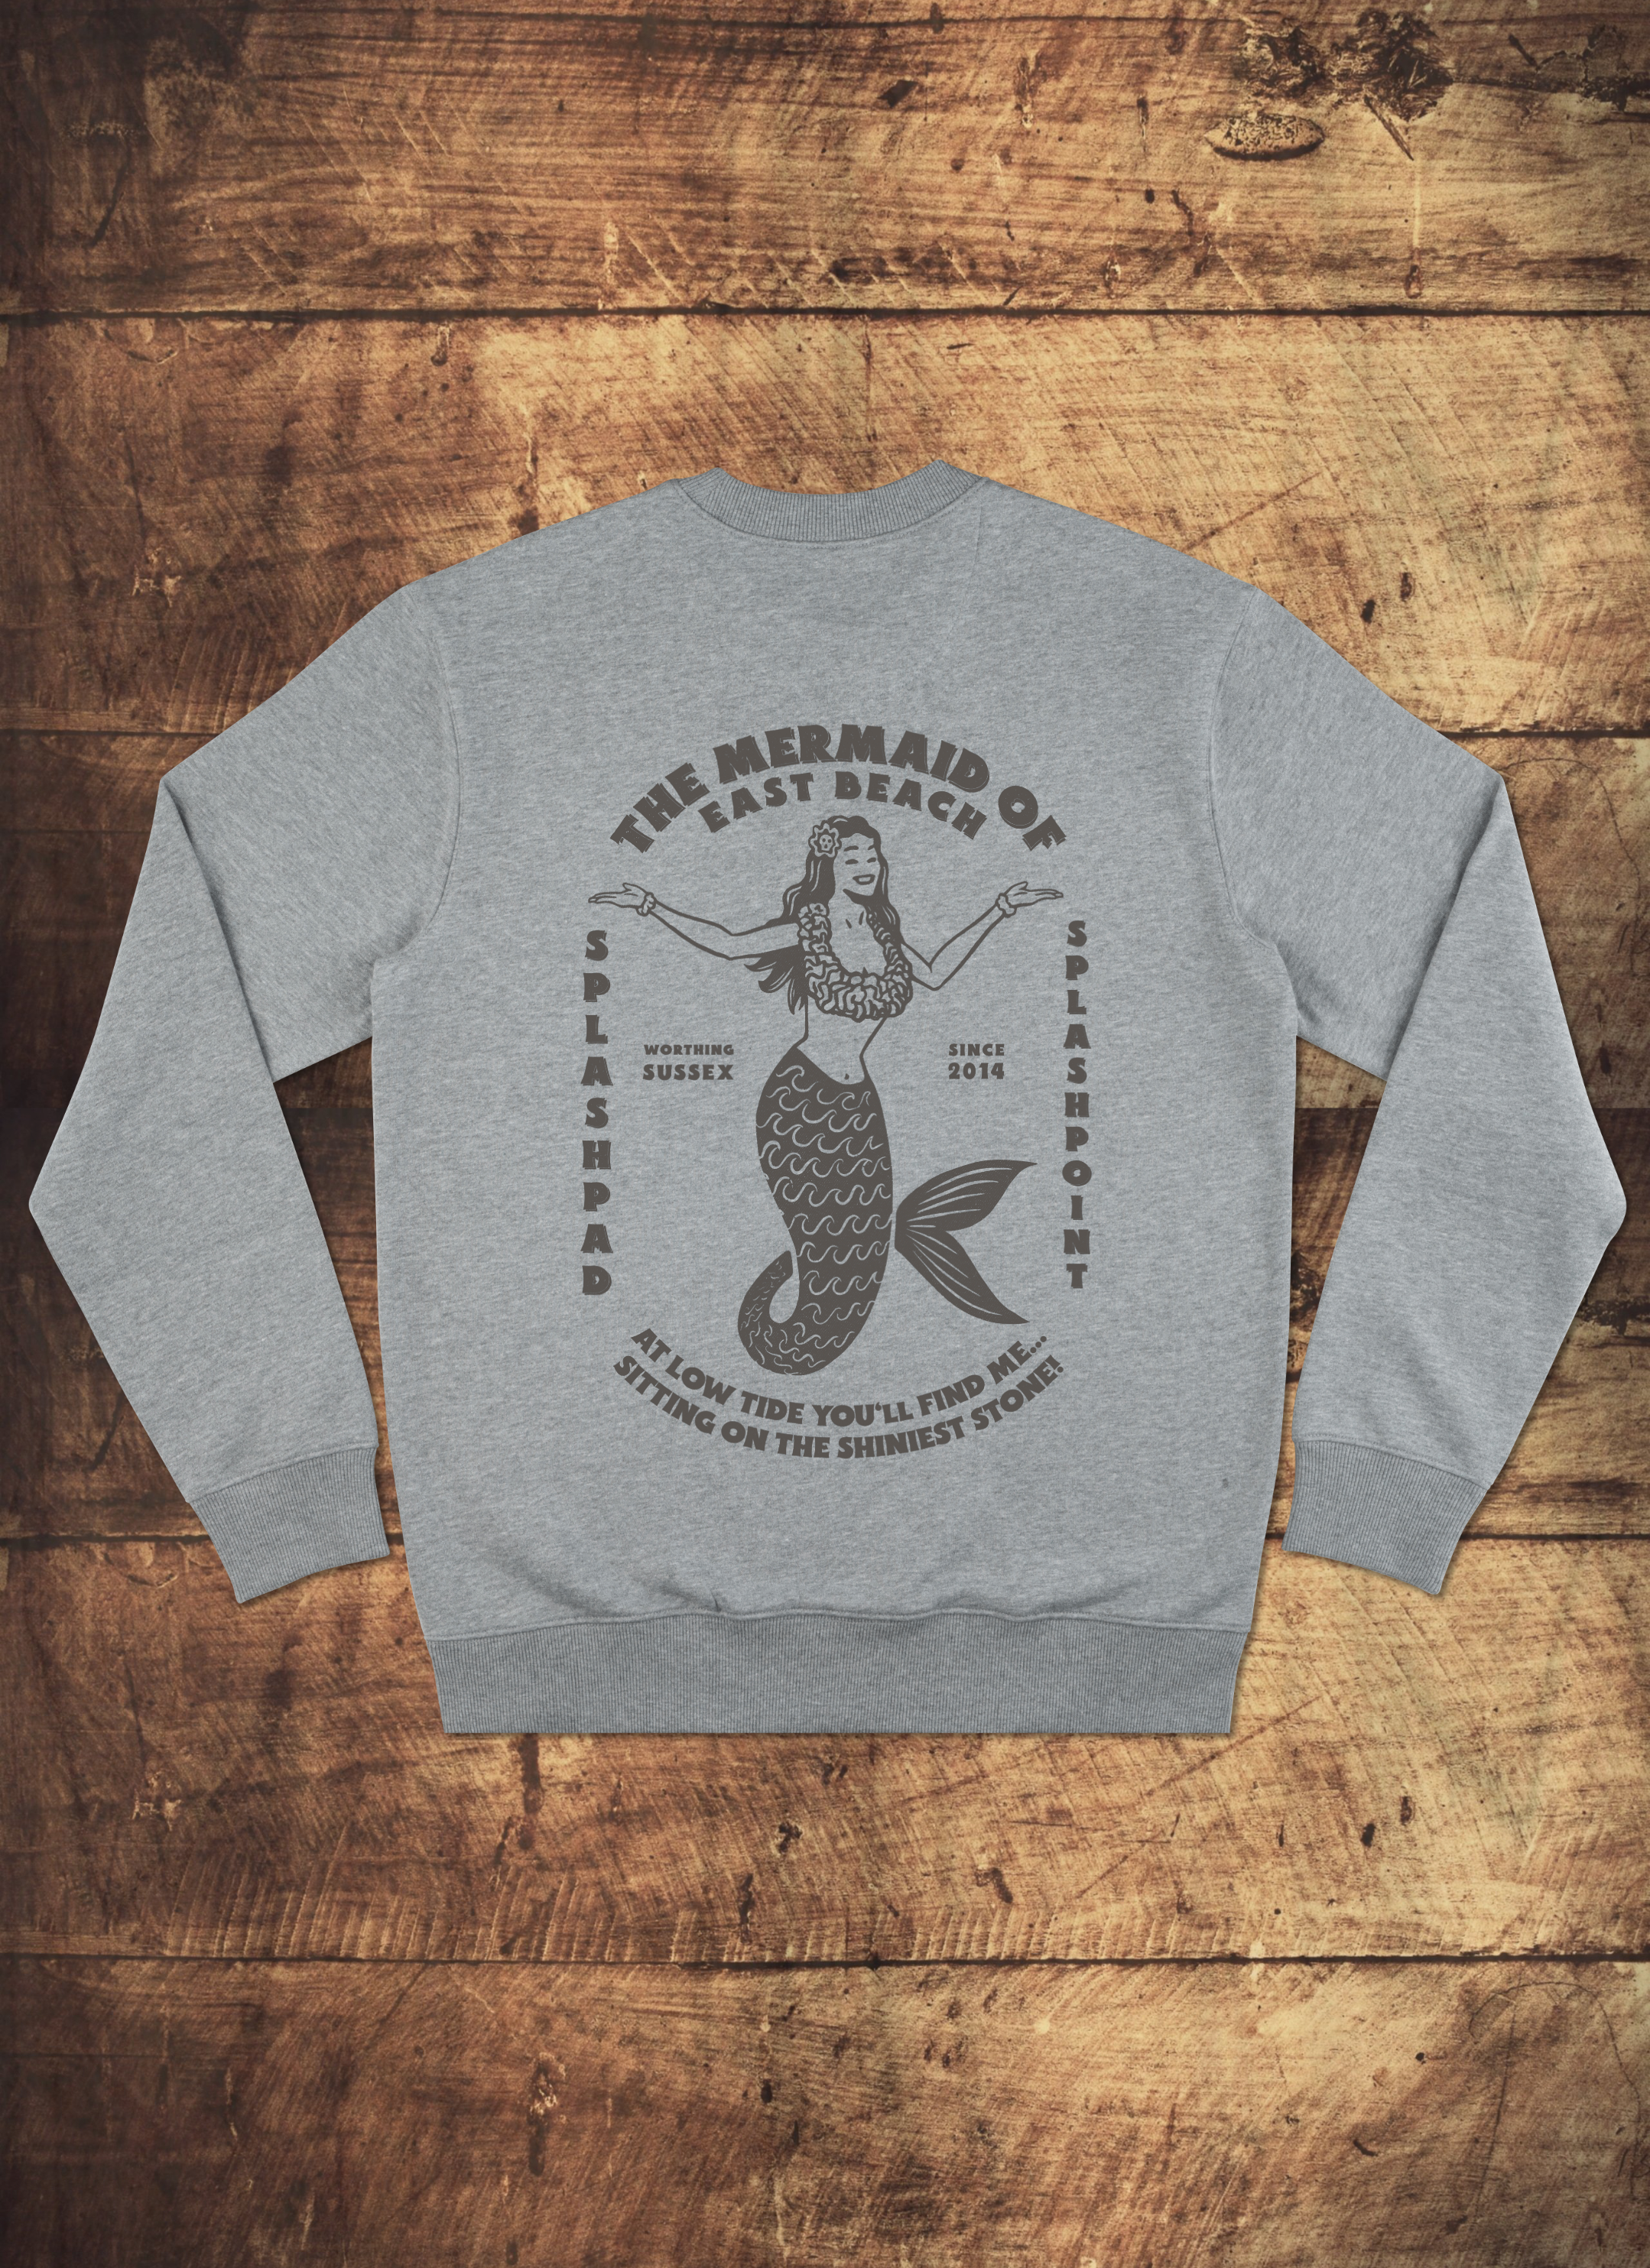 Mermaid Back Print Sweatshirt